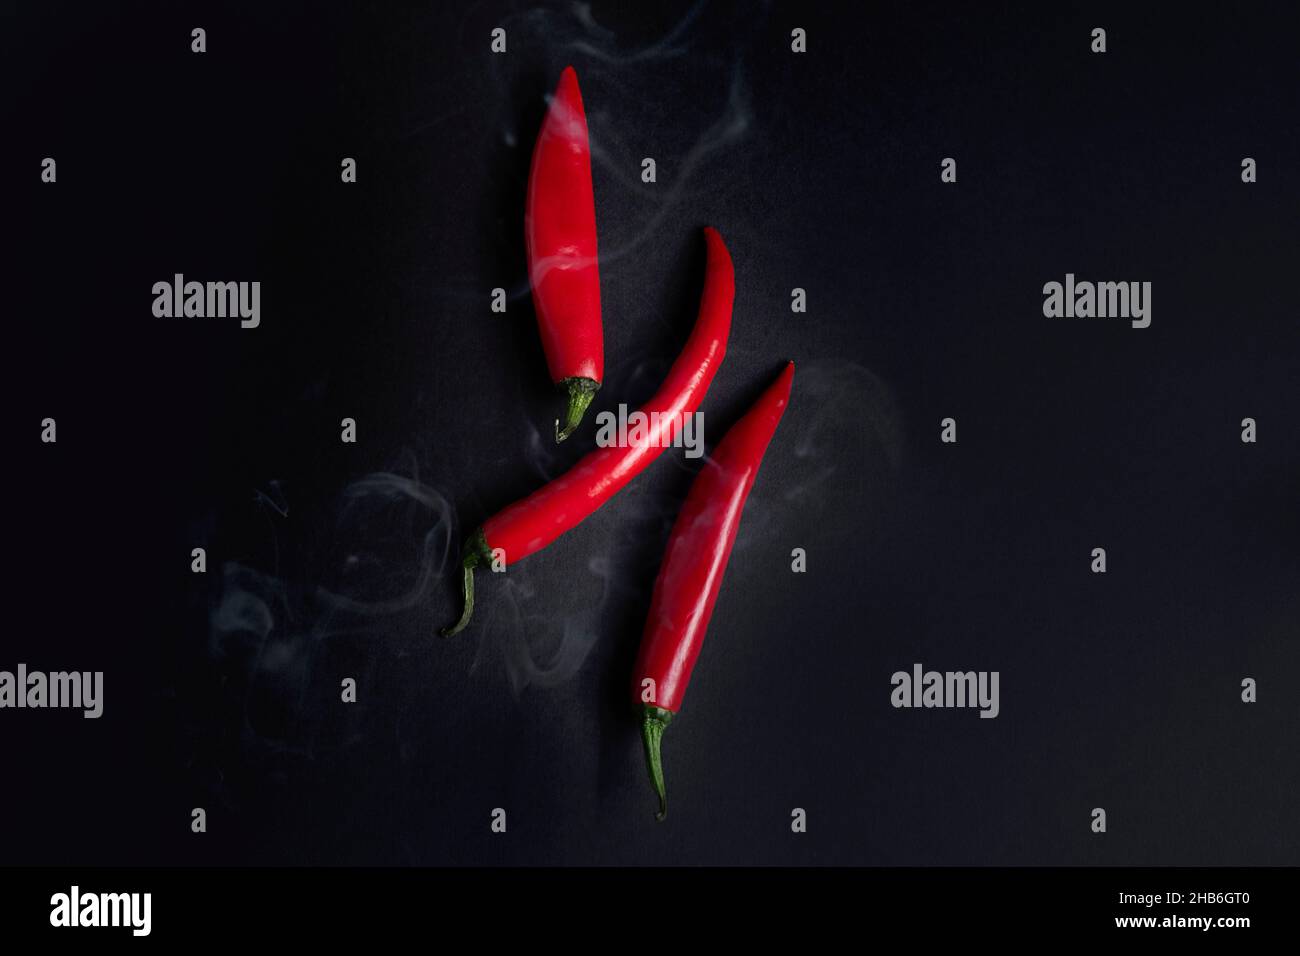 Pimientos rojos picantes calientes con humo proveniente de ellos sobre fondo negro oscuro, vista superior Foto de stock